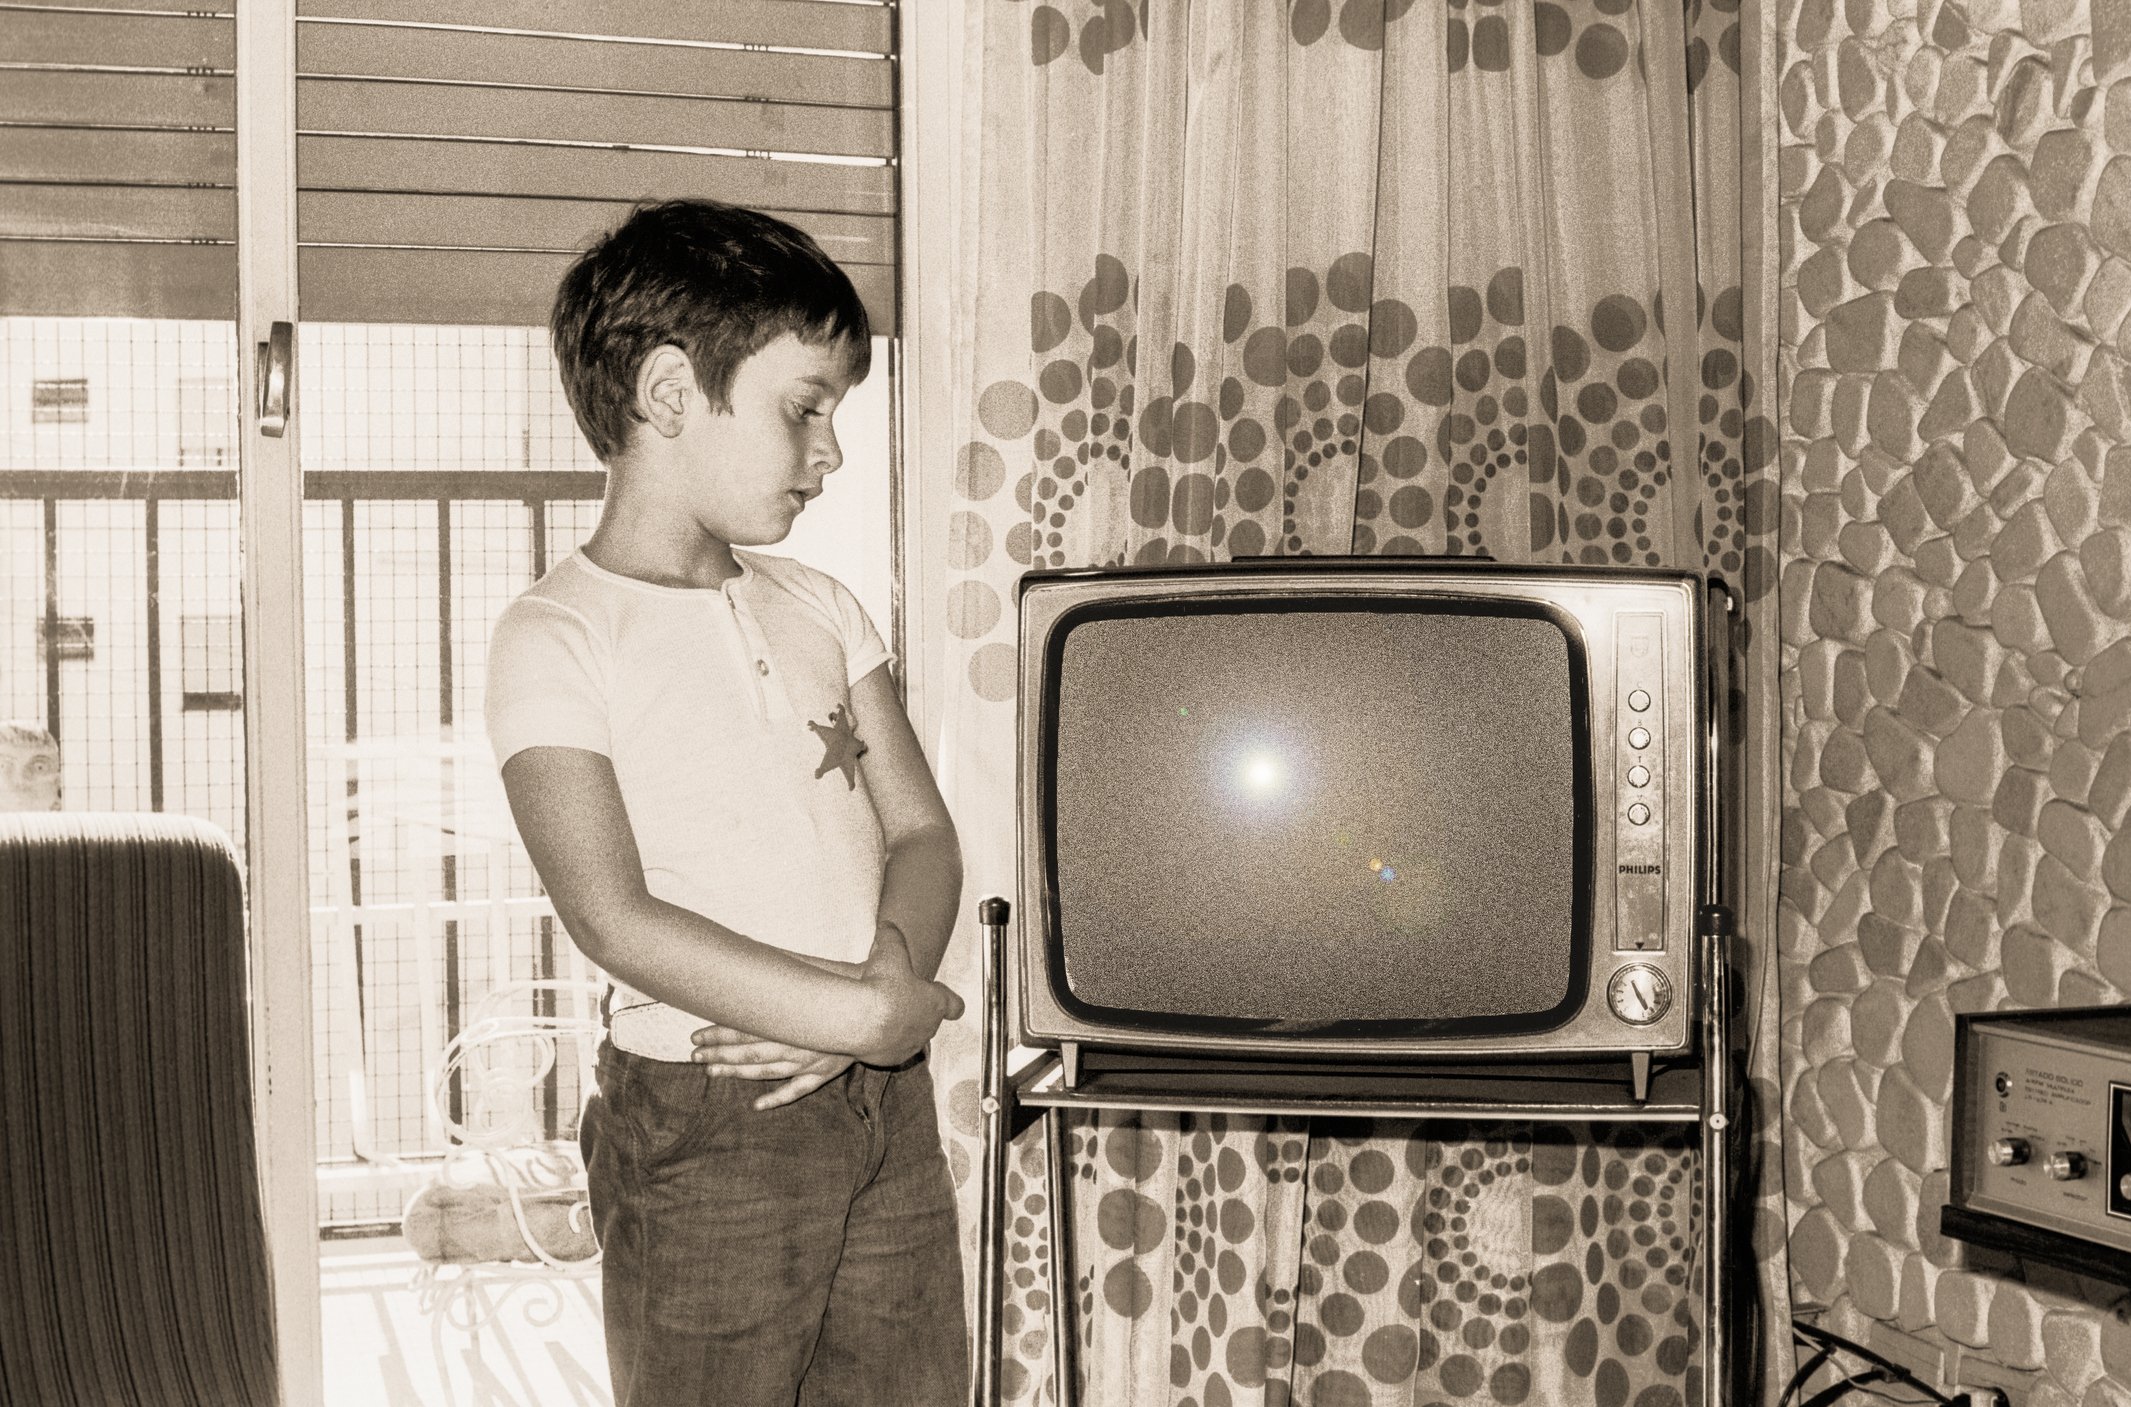 Где смотрели телевизор петькины родственники критики. Ламповый телевизор сигнал 2. Мальчик у телевизора. Мальчик старый телевизор. Транзисторный телевизор.